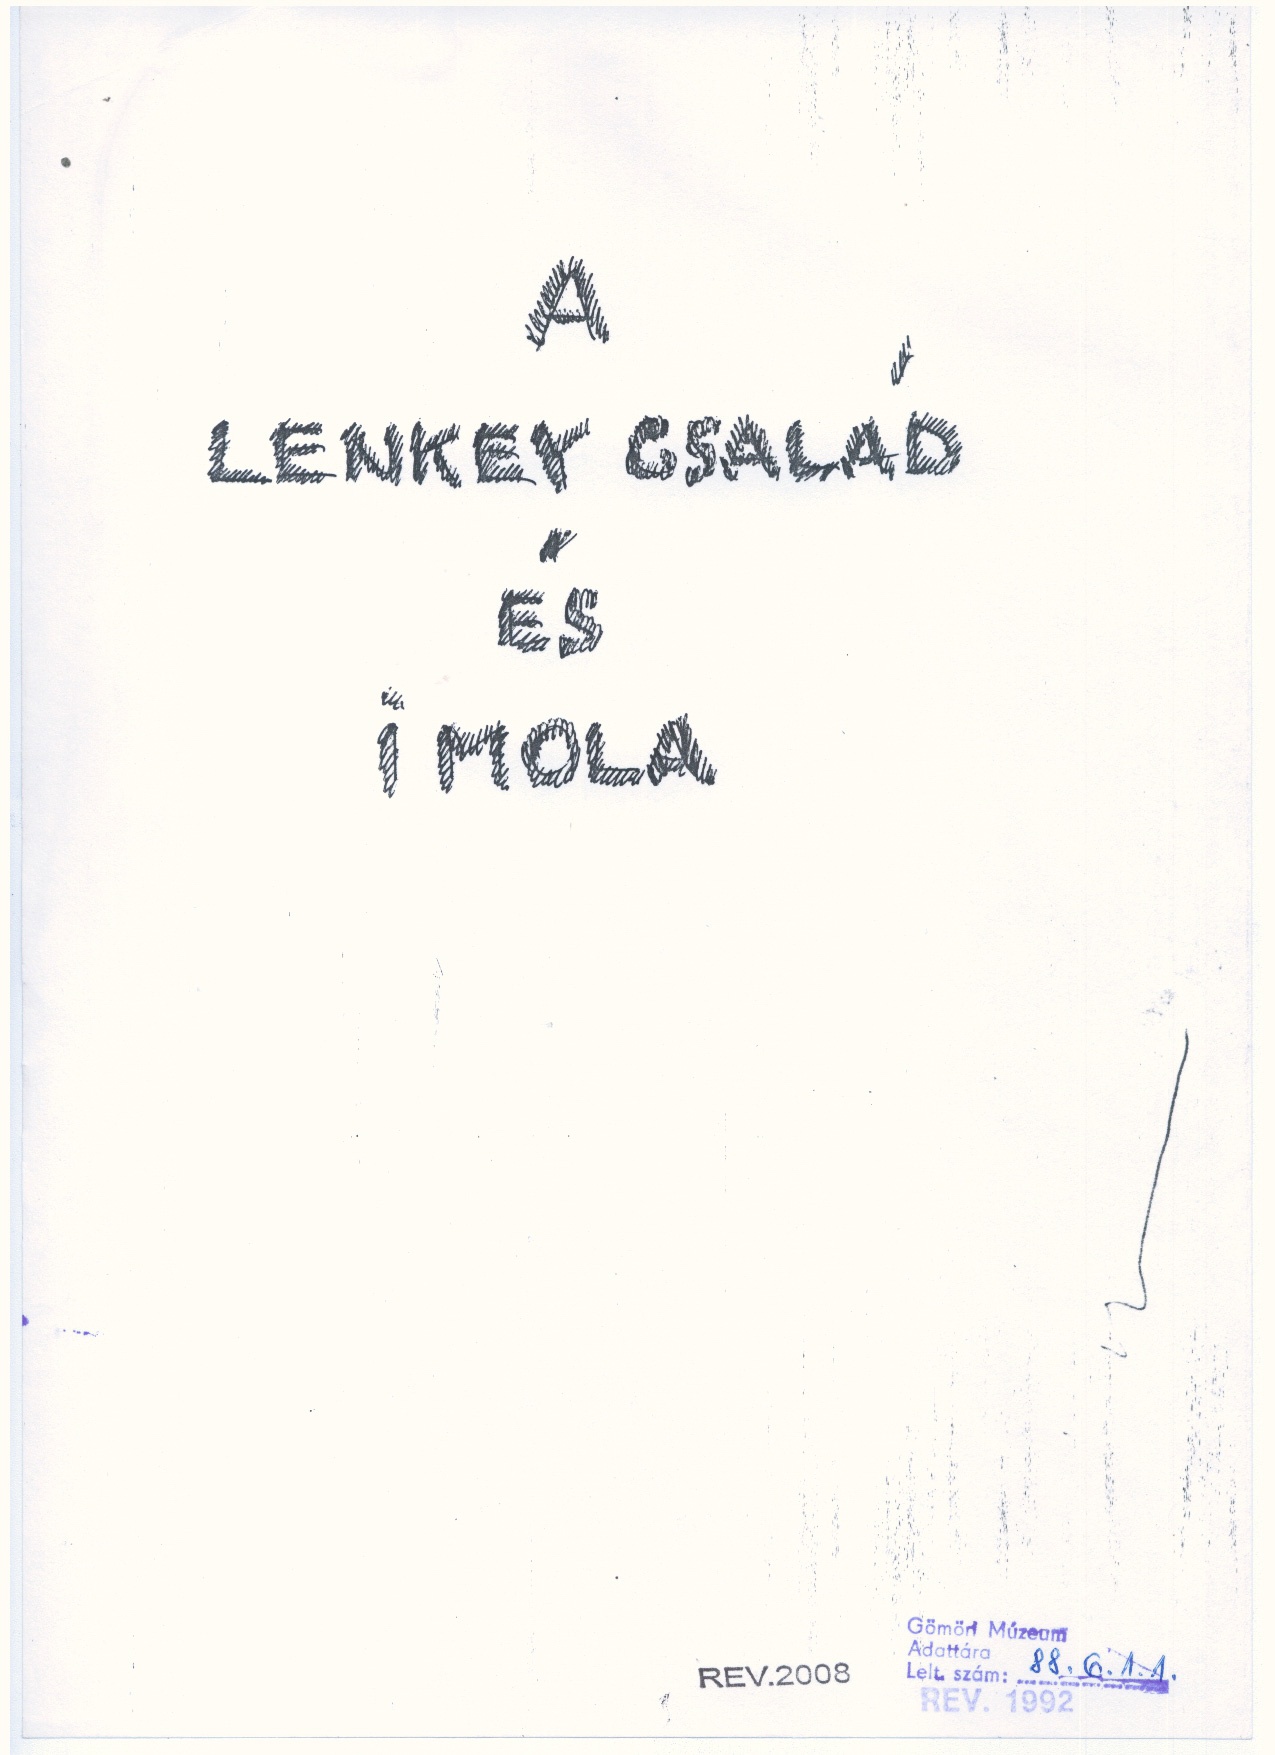 Dr. Lenkey Dezsô: Kézirat   1979. (Gömöri Múzeum, Putnok CC BY-NC-SA)